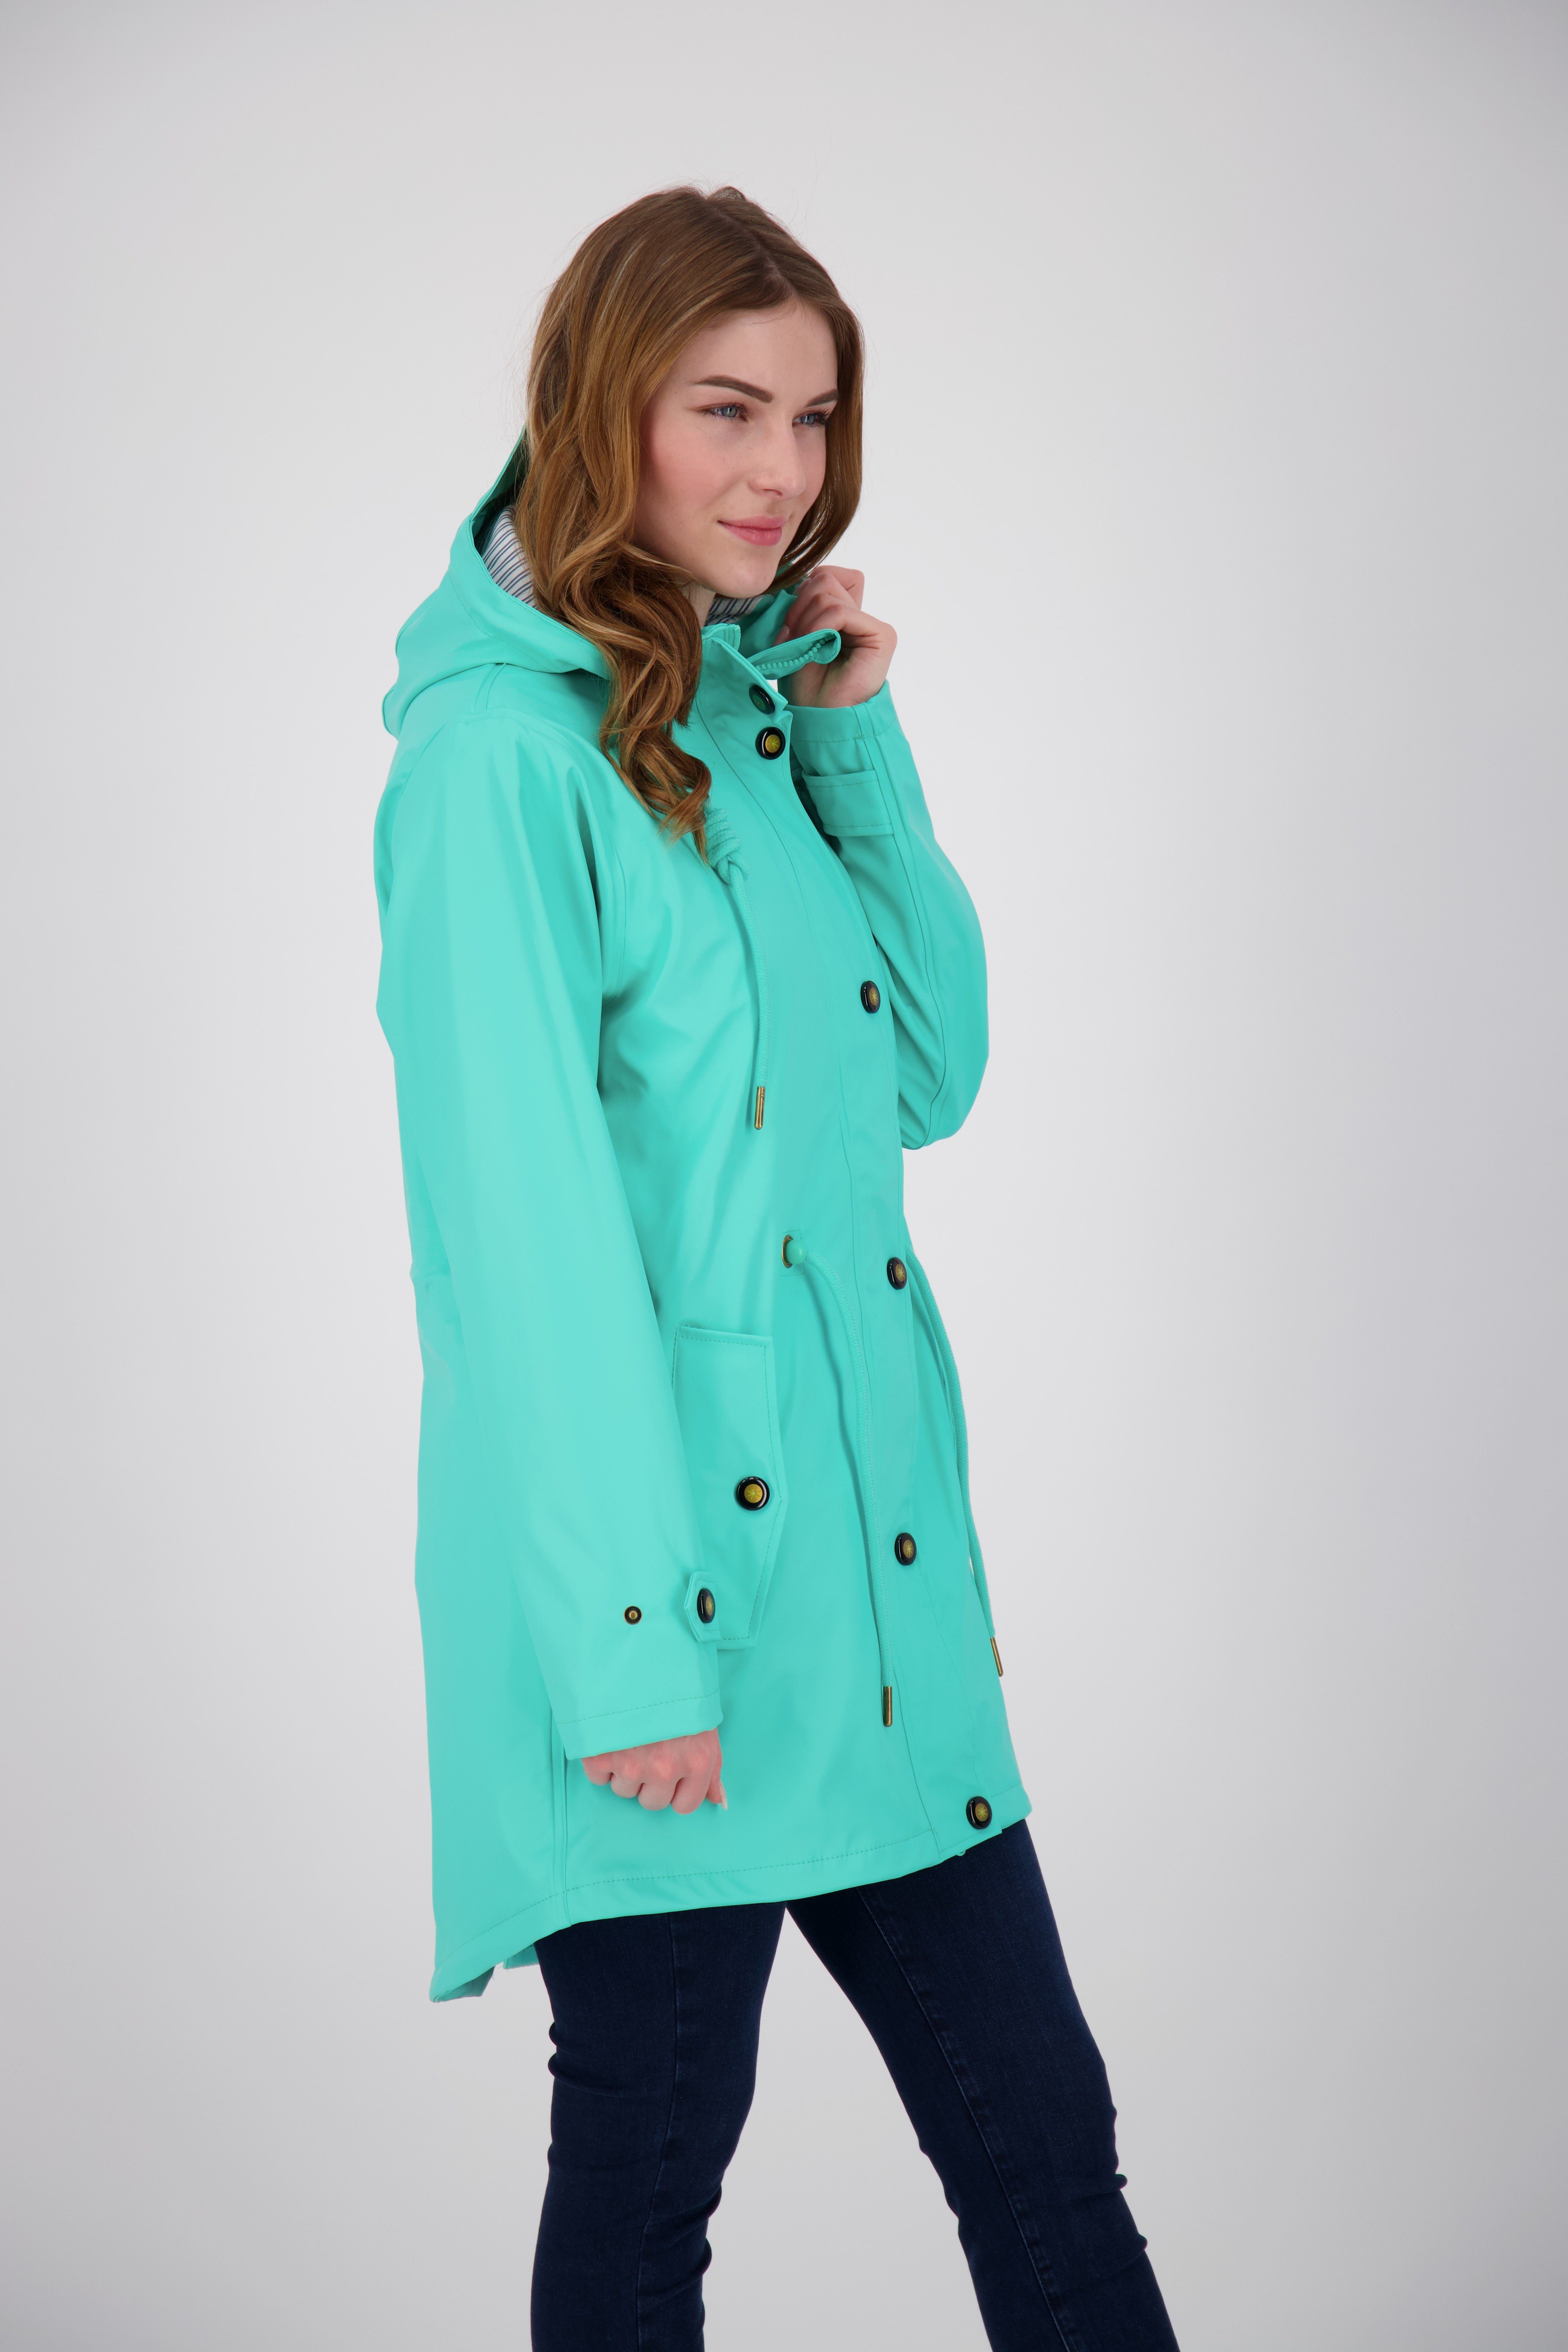 DEPROC Active Regenjacke Longjacket erhältlich Größen turquoise Regenjacke II WOMEN CS Großen auch #ankerglutliebe & in